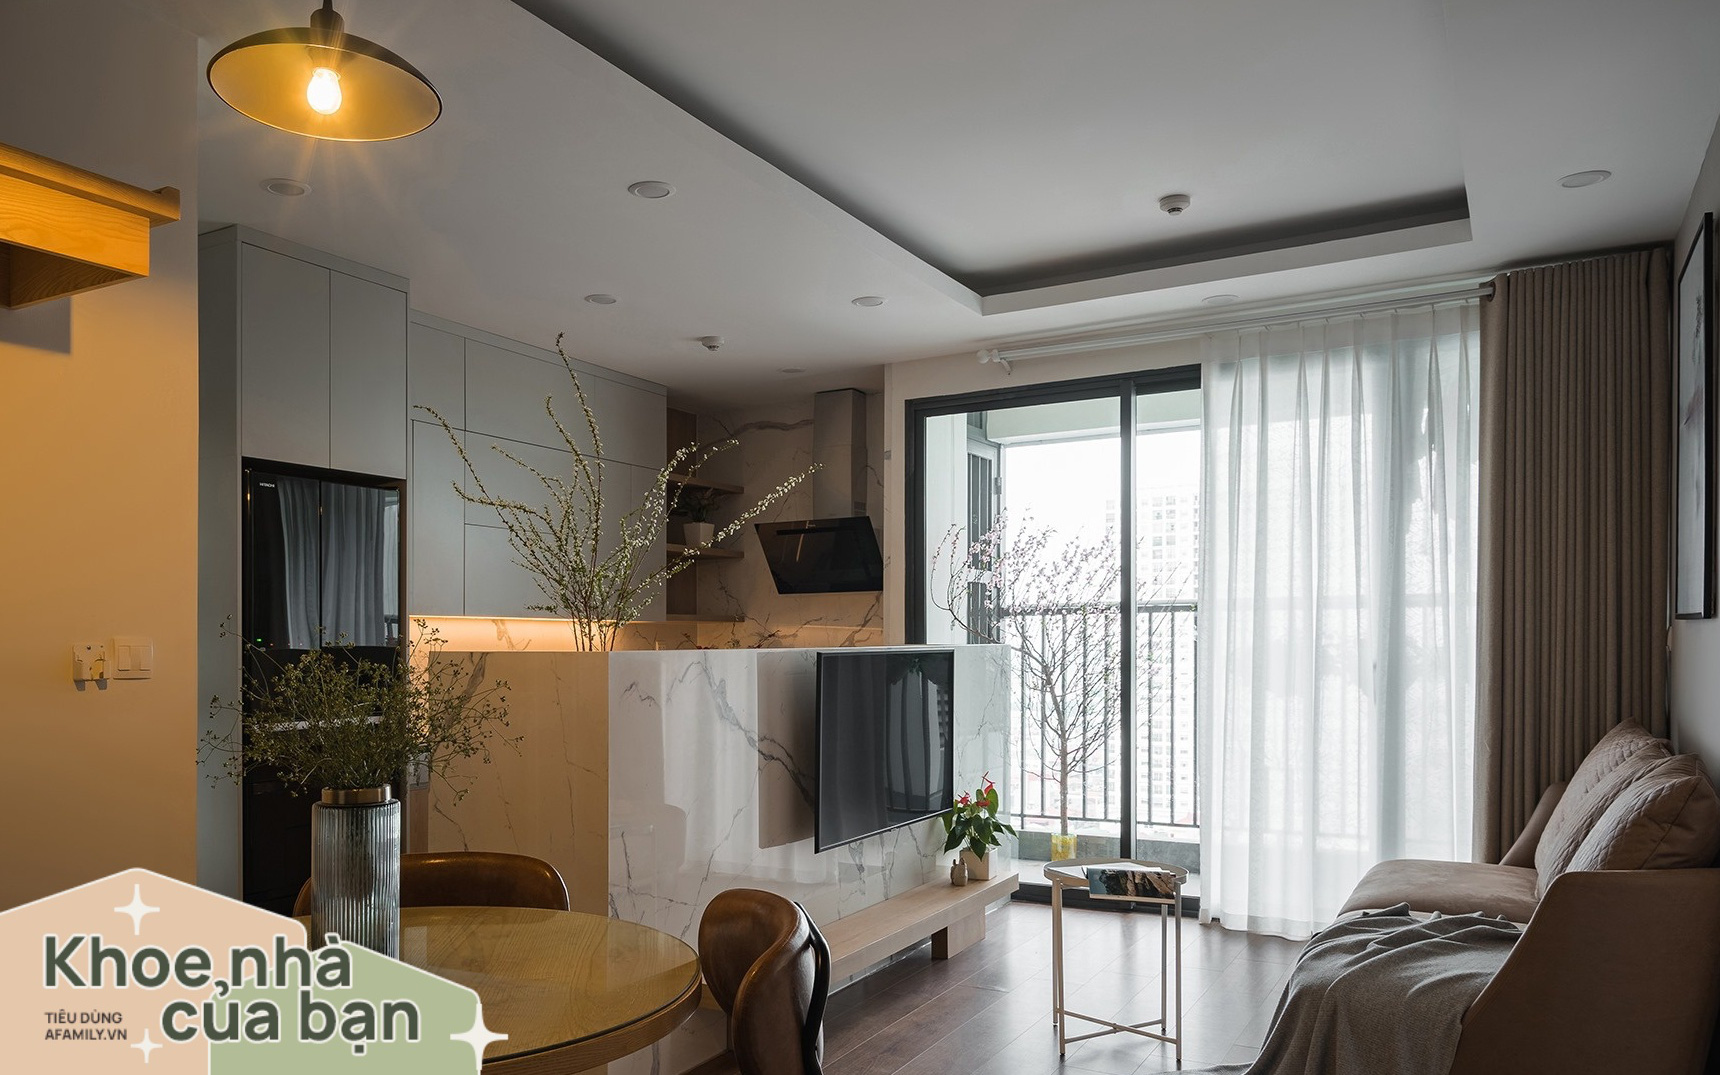 Ngắm căn hộ nhỏ "lên thực tế còn đẹp hơn 3D" ở chung cư Imperia Sky Garden Minh Khai, Hà Nội